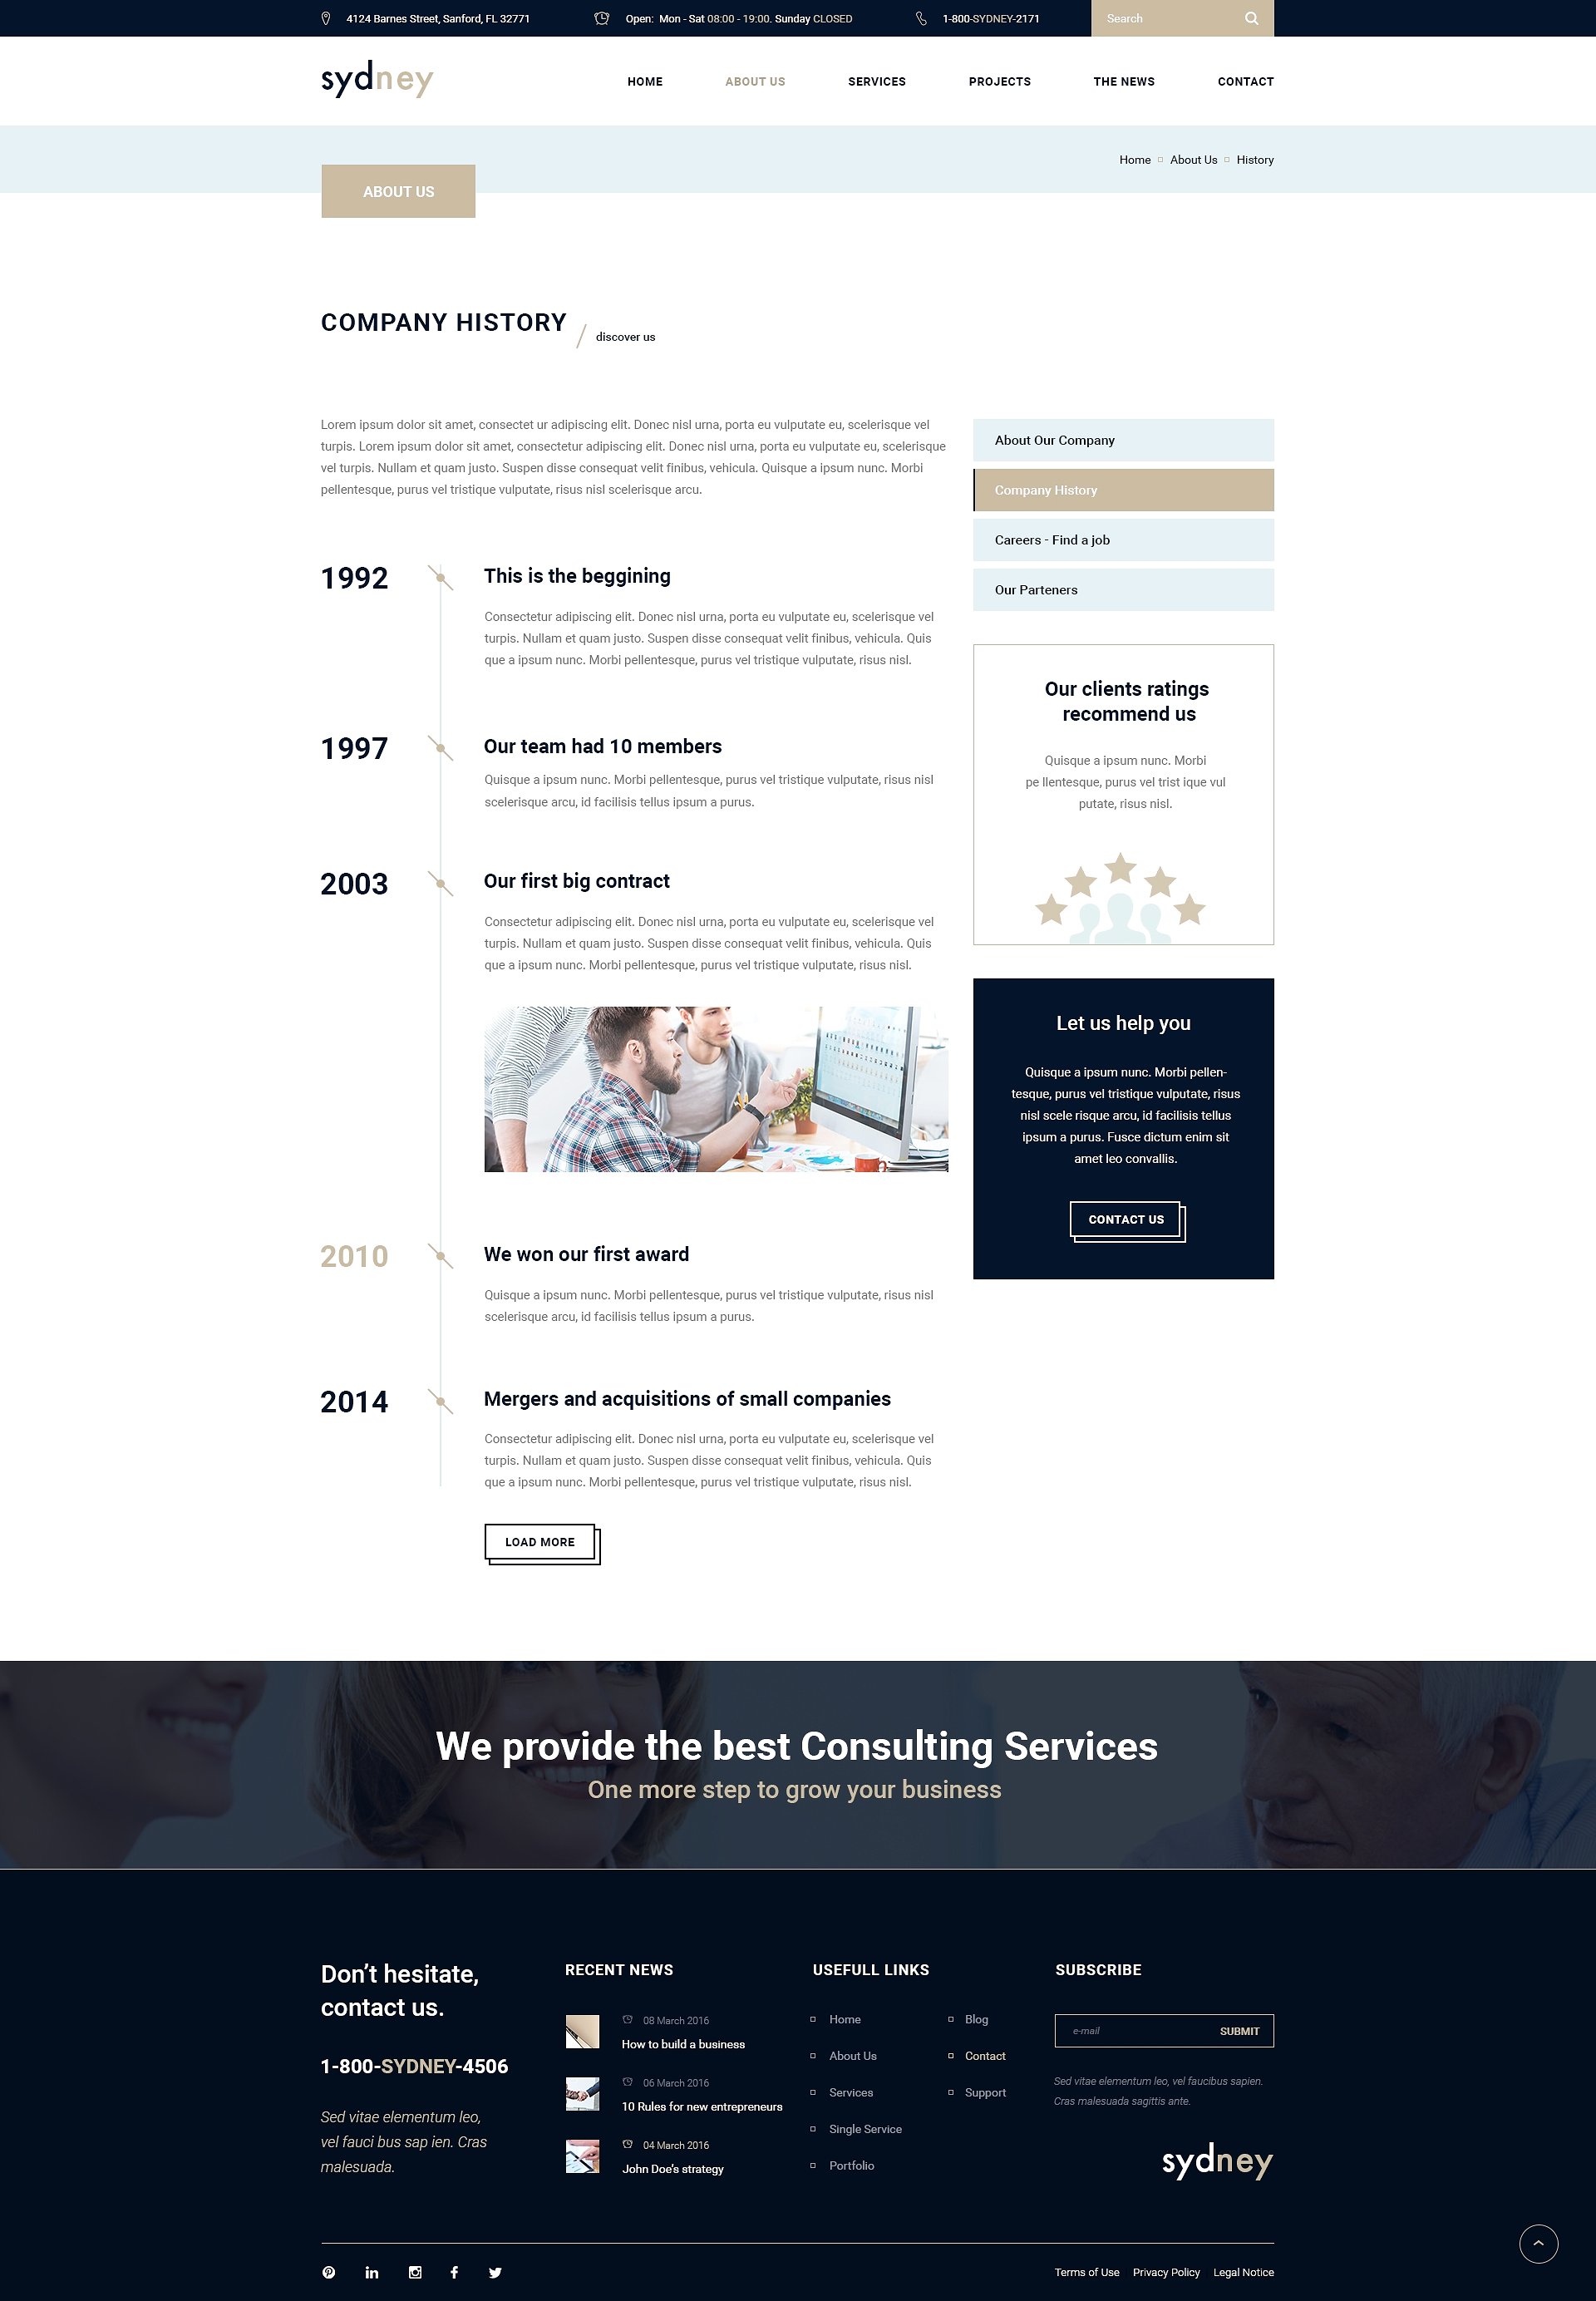 金融咨询类企业网站 PSD 模板 Sydney- Premium Finance Business PSD插图(5)